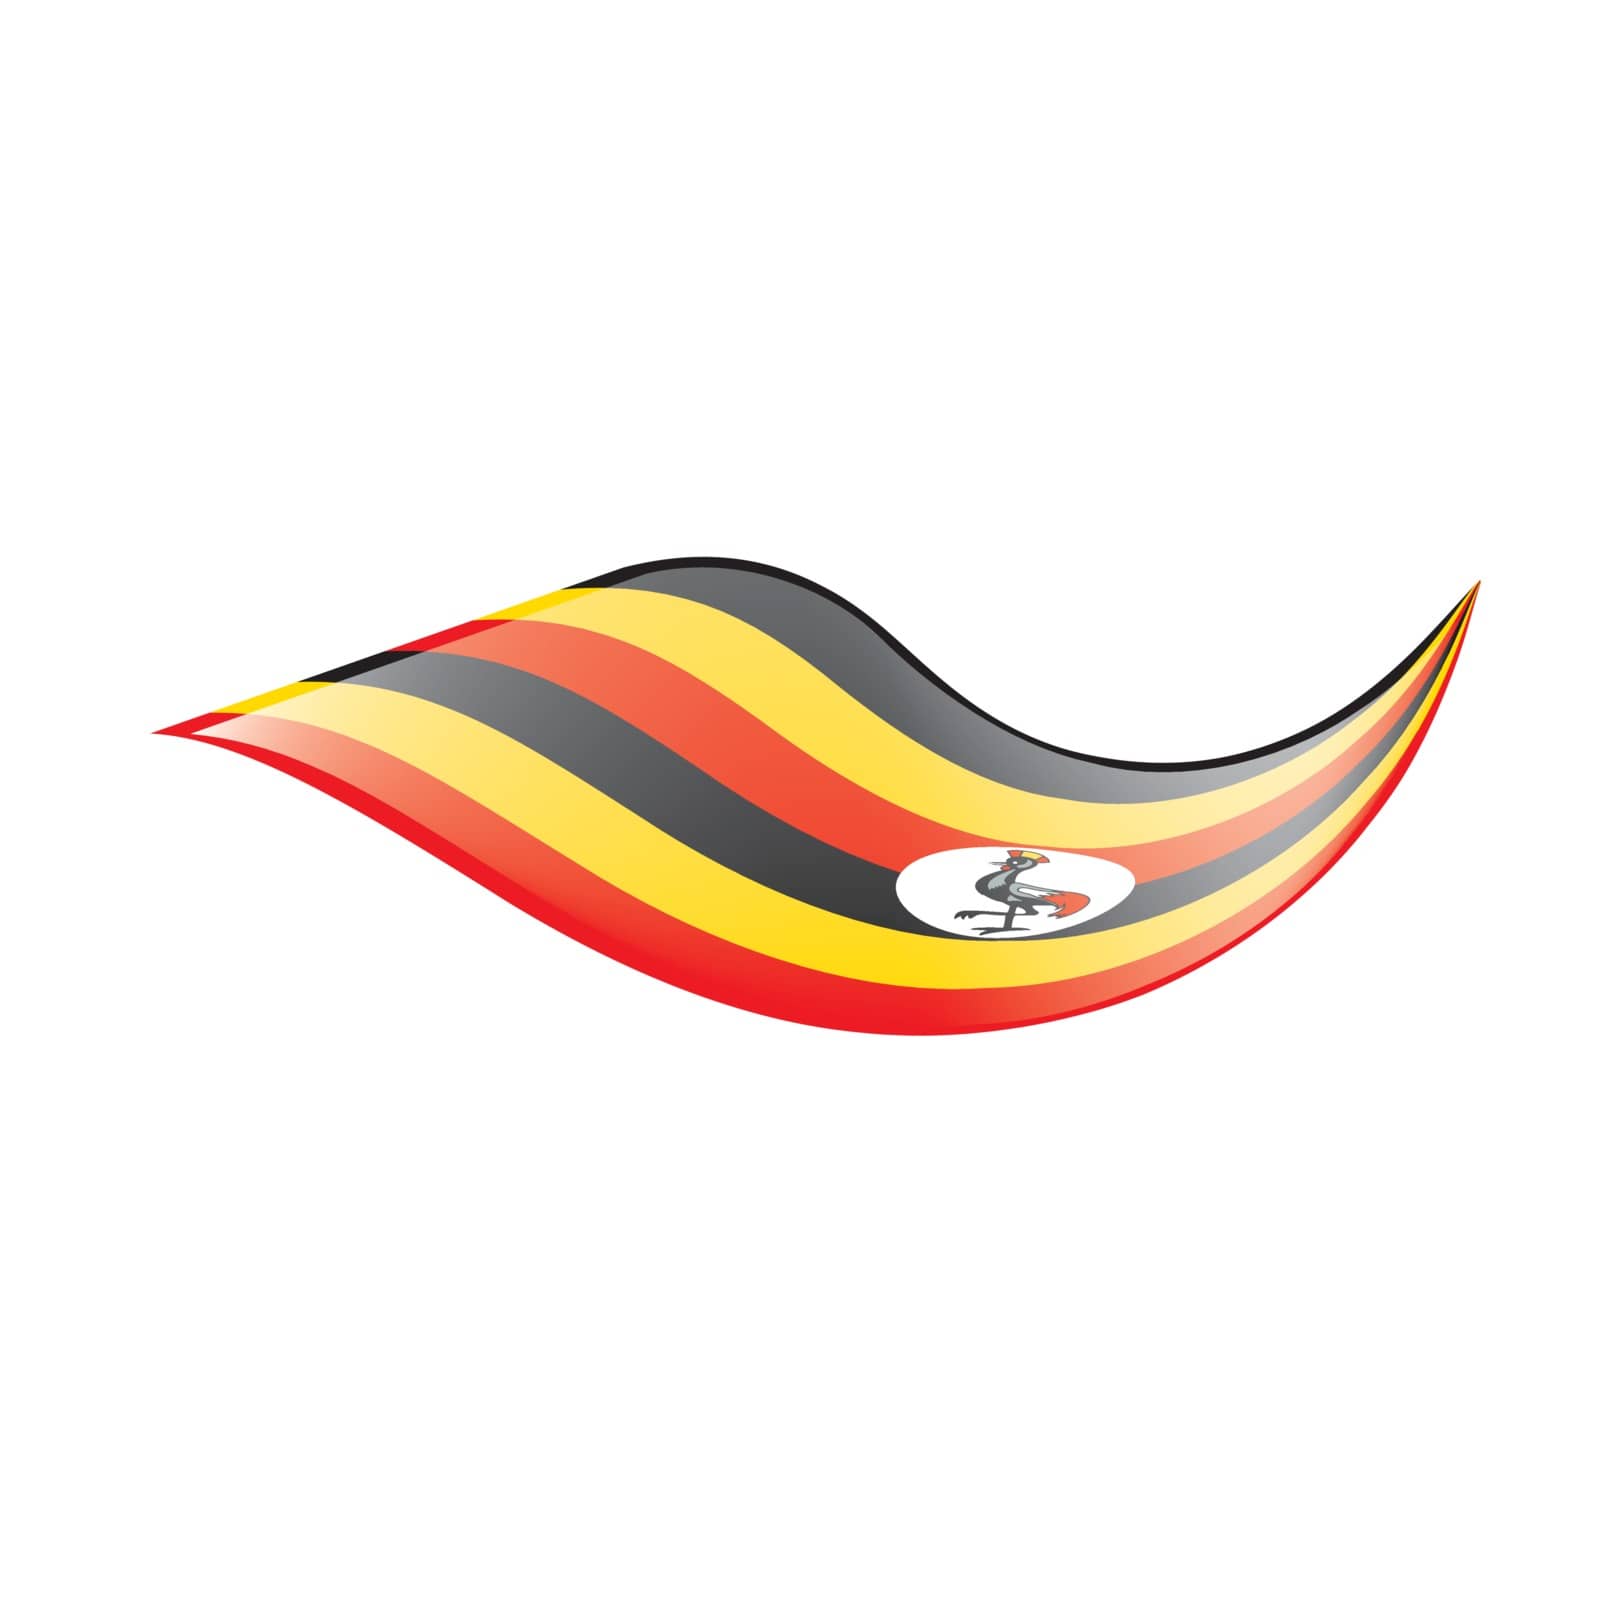 Uganda flag, vector illustration by butenkow